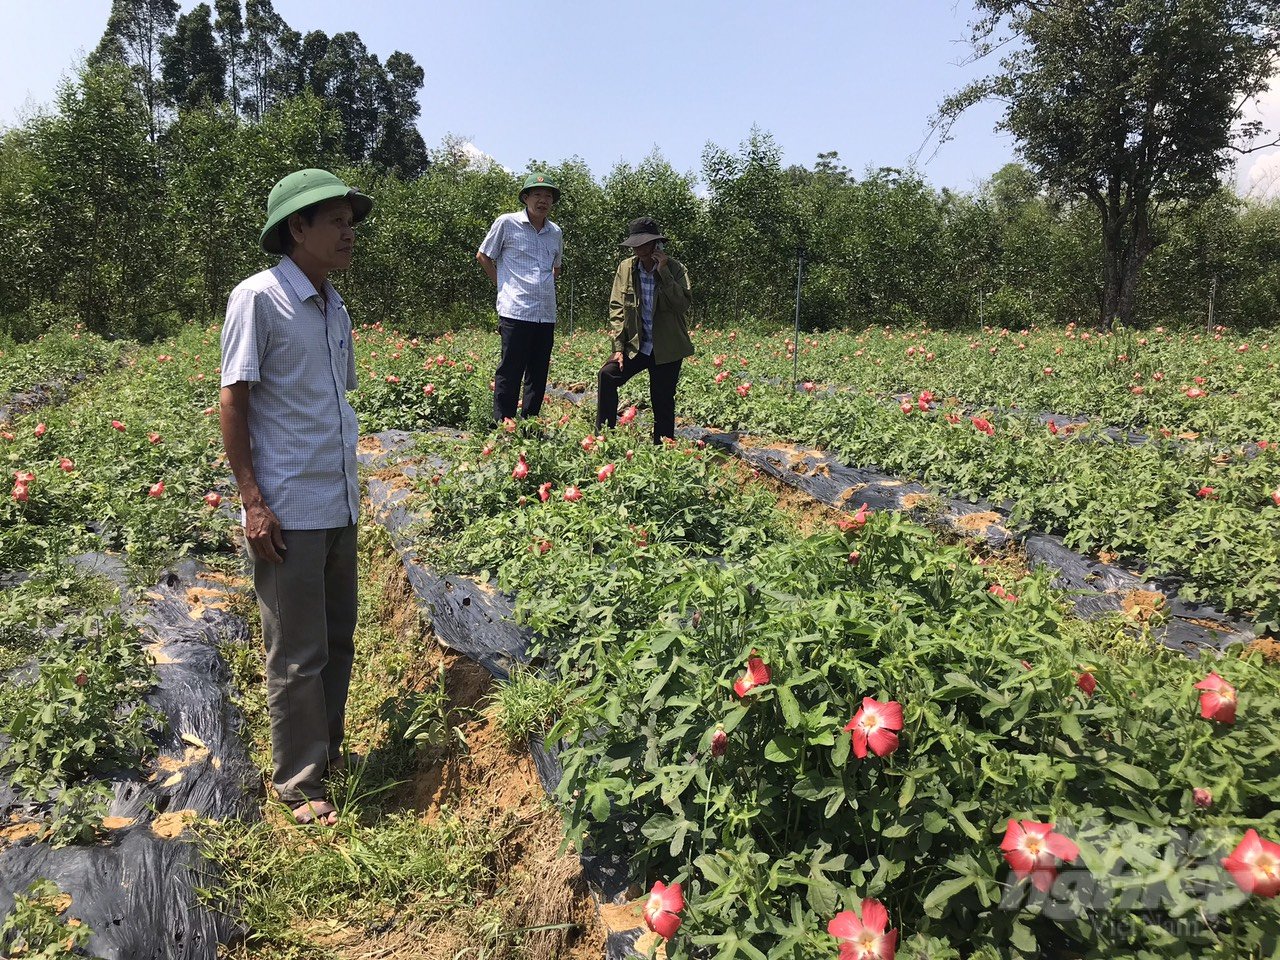 Lãnh đạo thị xã Hương Trà kiểm tra mô hình trồng sâm Bố Chính (ở giai đoạn cây sâm còn phát triển bình thường). Ảnh: CĐ.